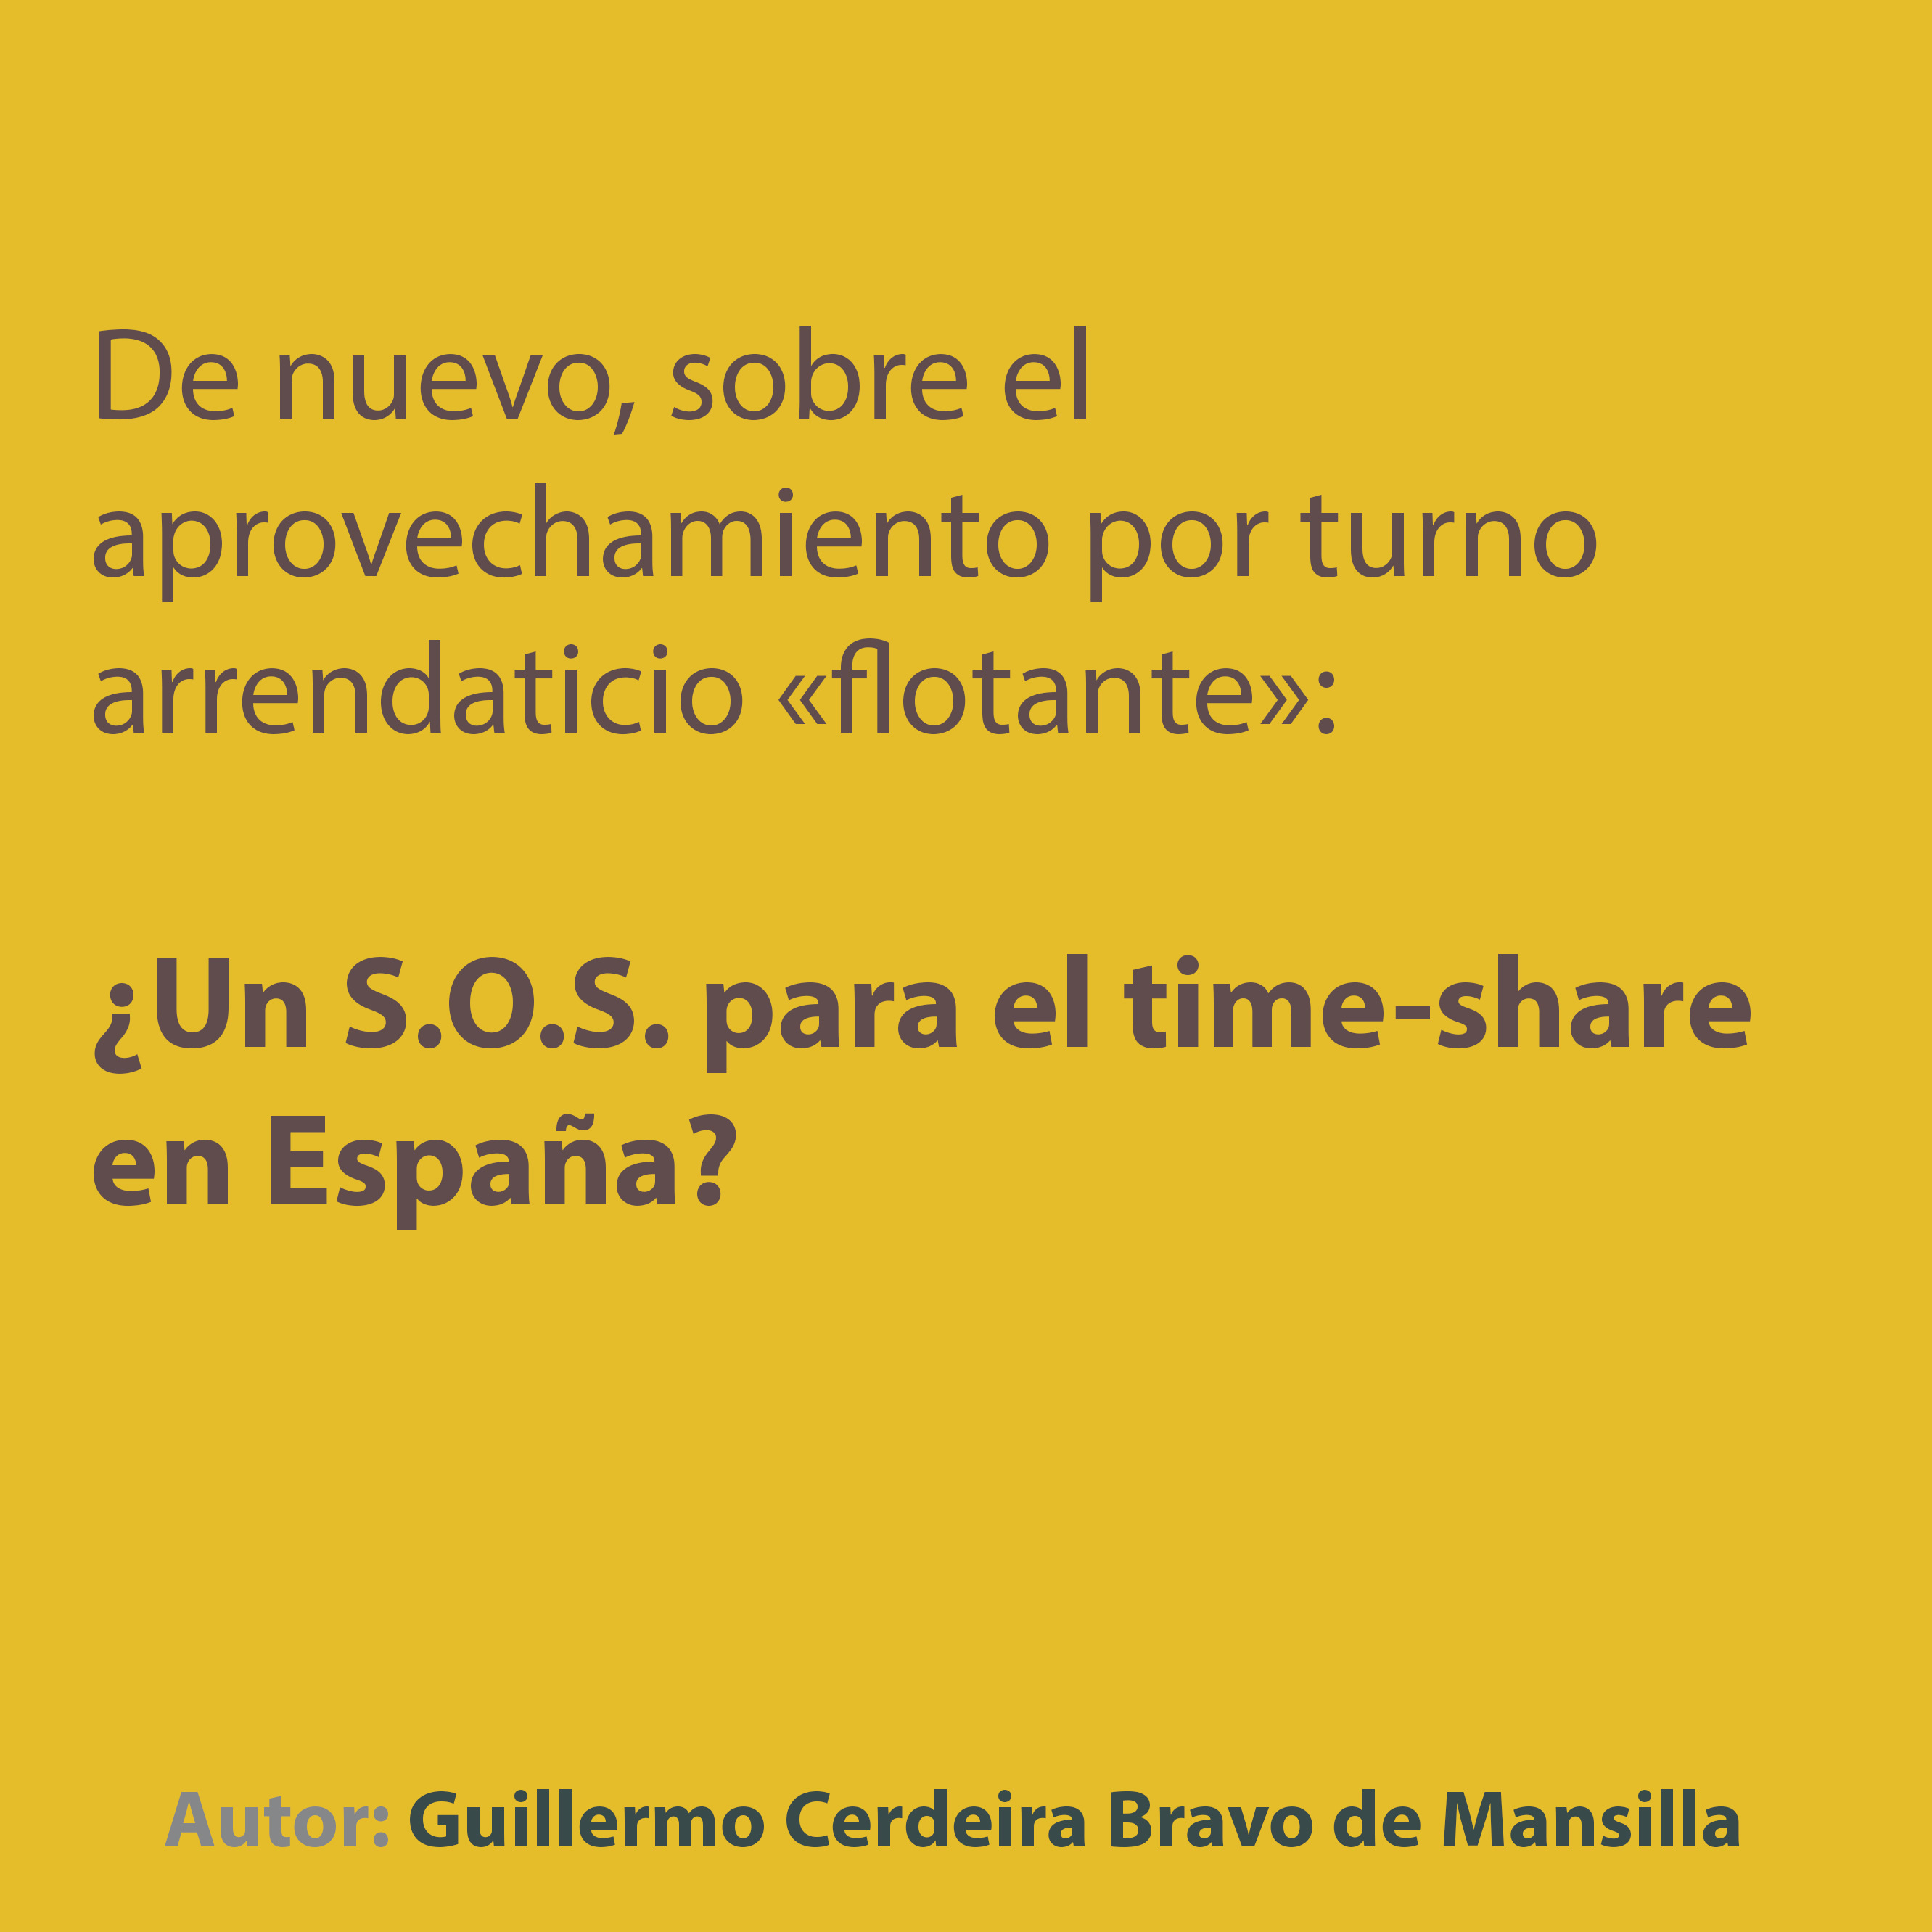 De nuevo, sobre el aprovechamiento por turno arrendaticio «flotante»: ¿Un S.O.S. para el time-share en España?